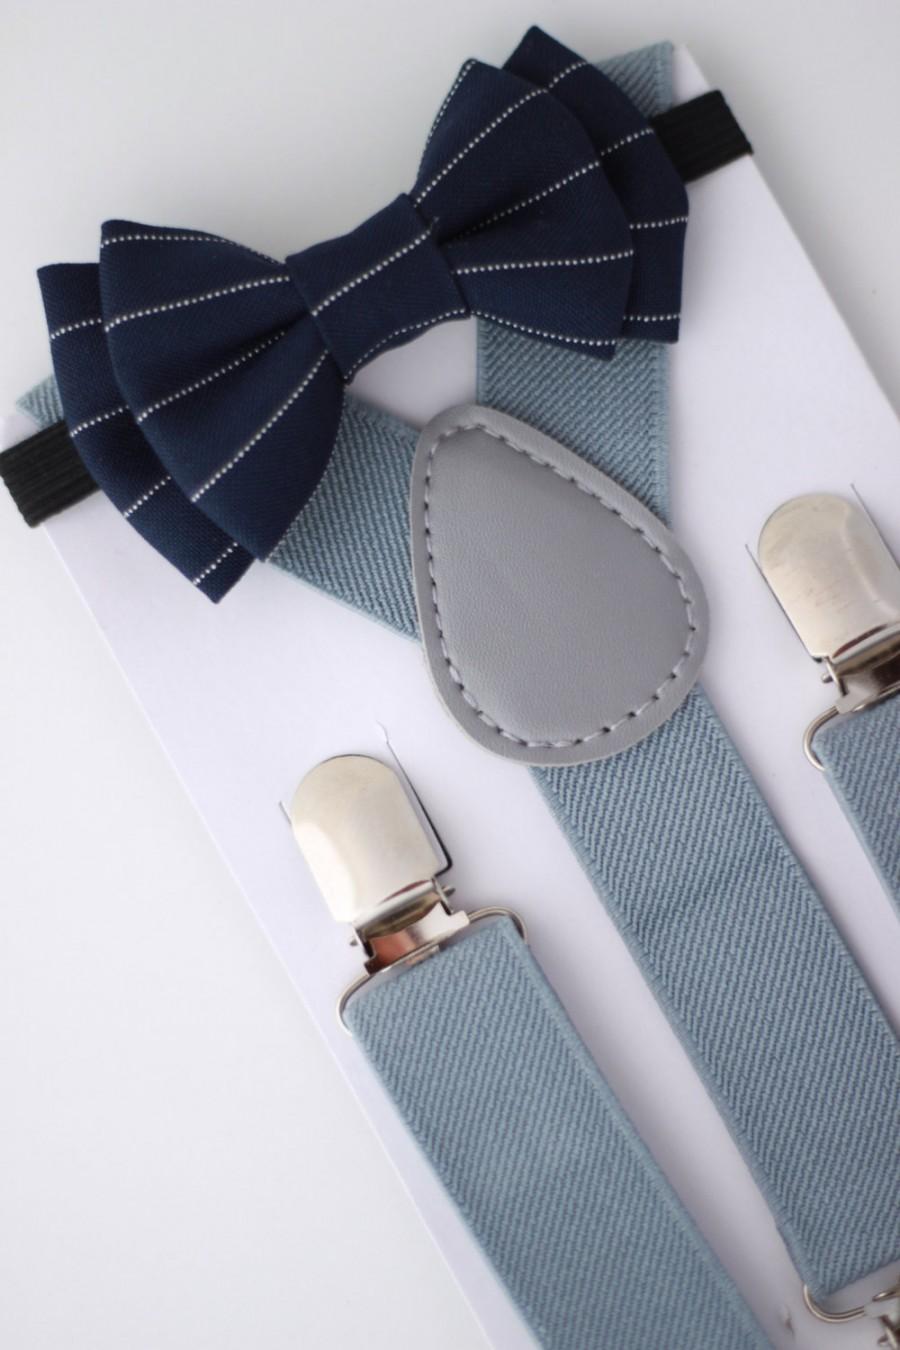 Mariage - SUSPENDER & BOWTIE SET.  Newborn - Adult sizes. Light grey Suspenders. Navy blue pinstripe bow tie.